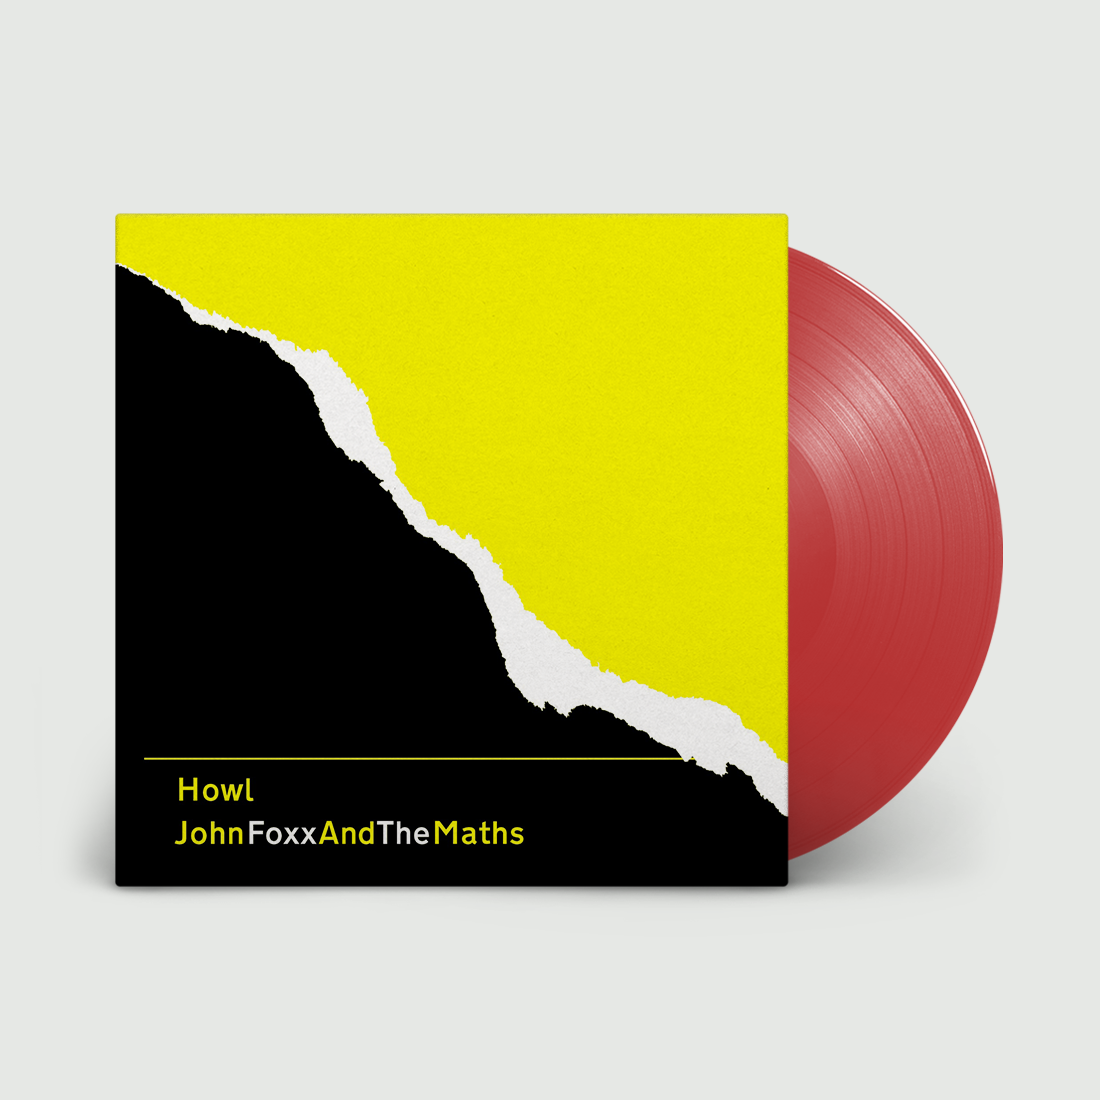 John Foxx and the Maths - Howl (Repress): Red Vinyl LP